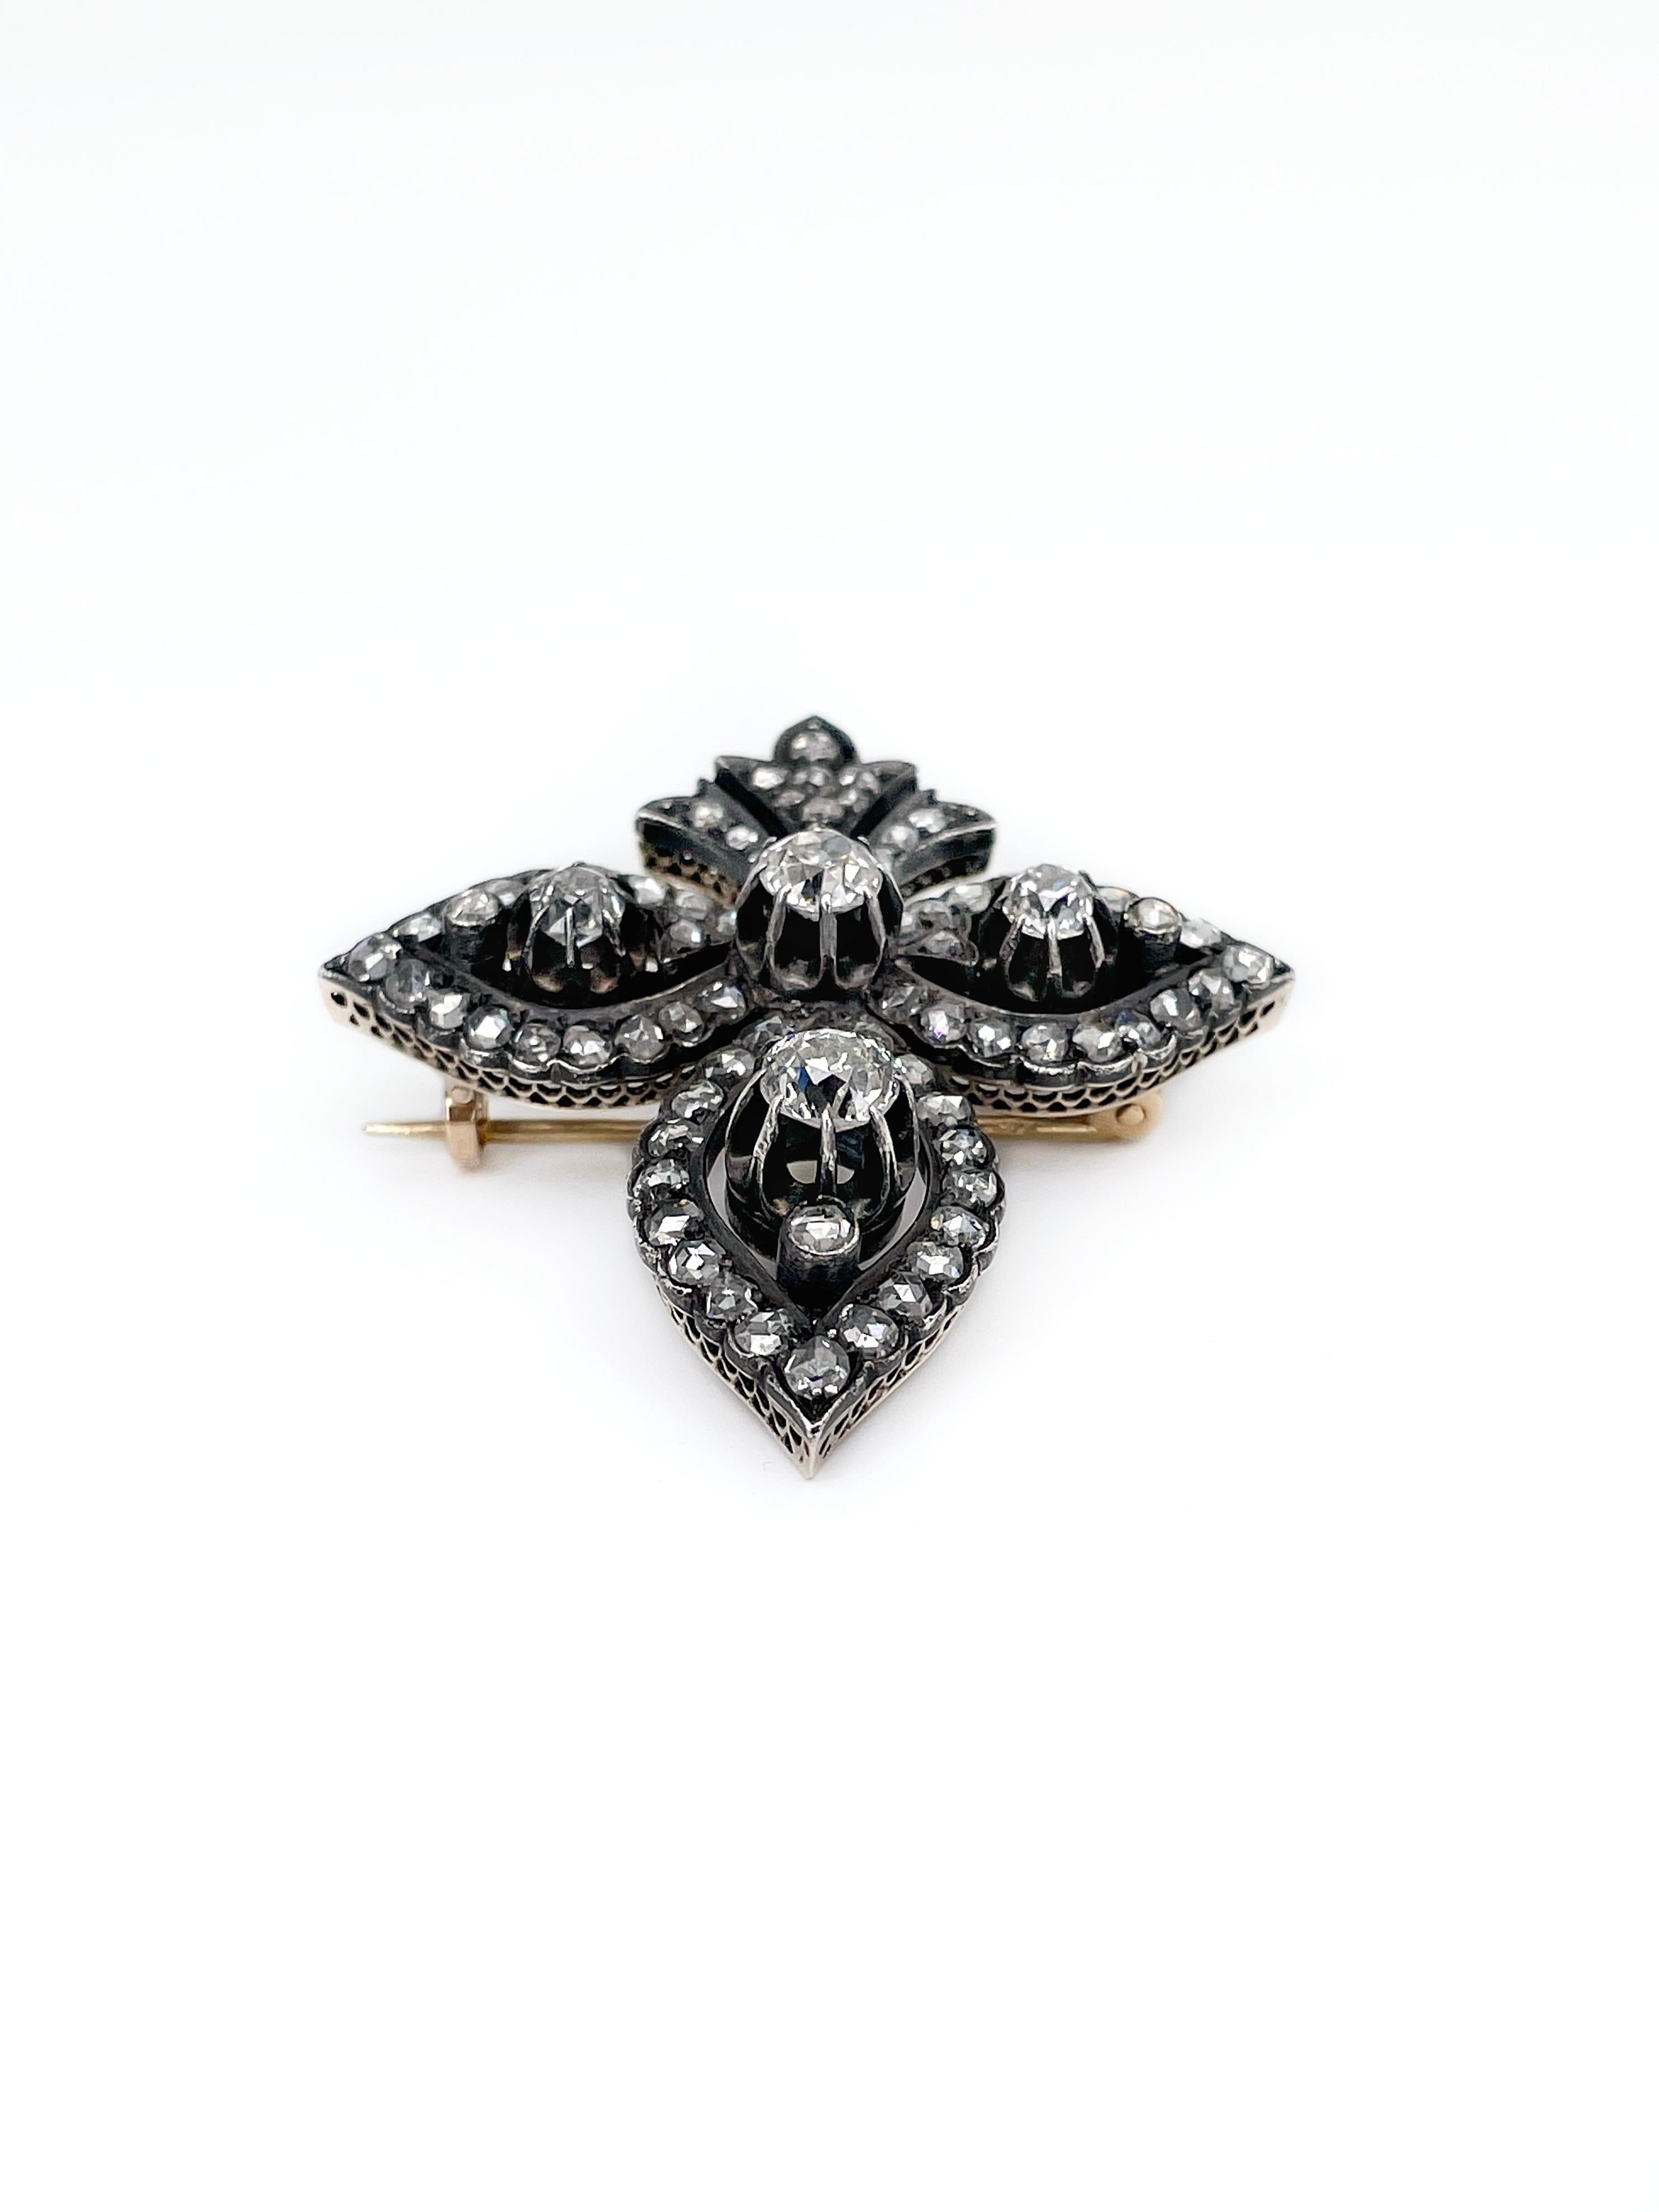 Victorian Antique 14K Gold “Fleur-de-lis” Diamond Brooch Pendant XIX Century